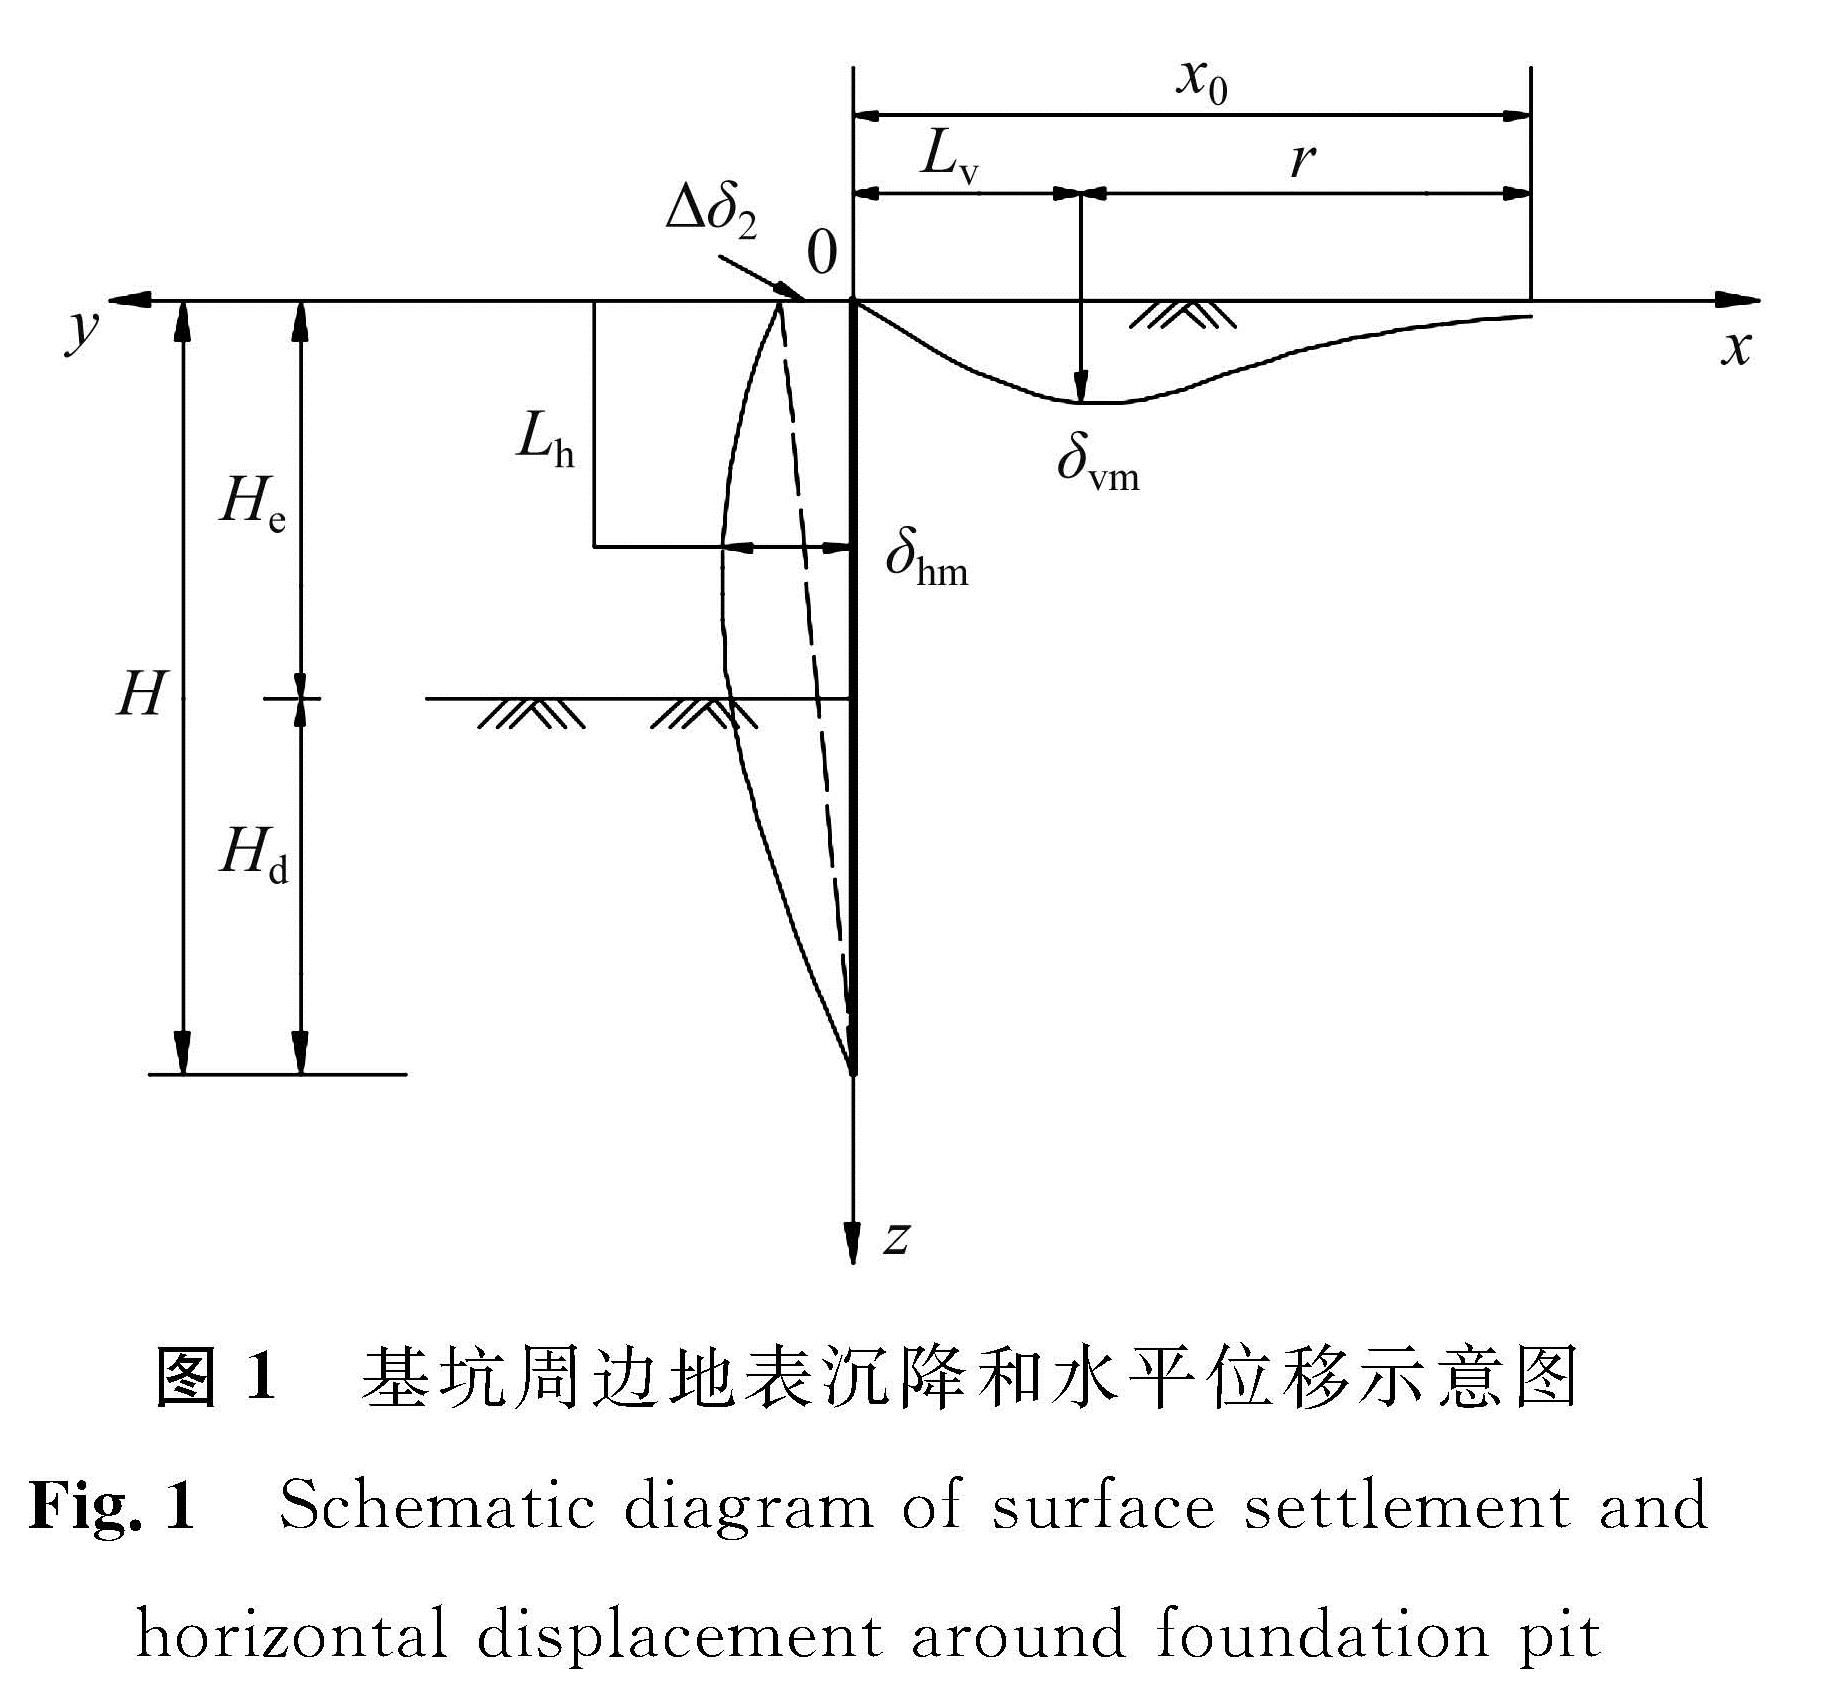 图1 基坑周边地表沉降和水平位移示意图<br/>Fig.1 Schematic diagram of surface settlement and horizontal displacement around foundation pit